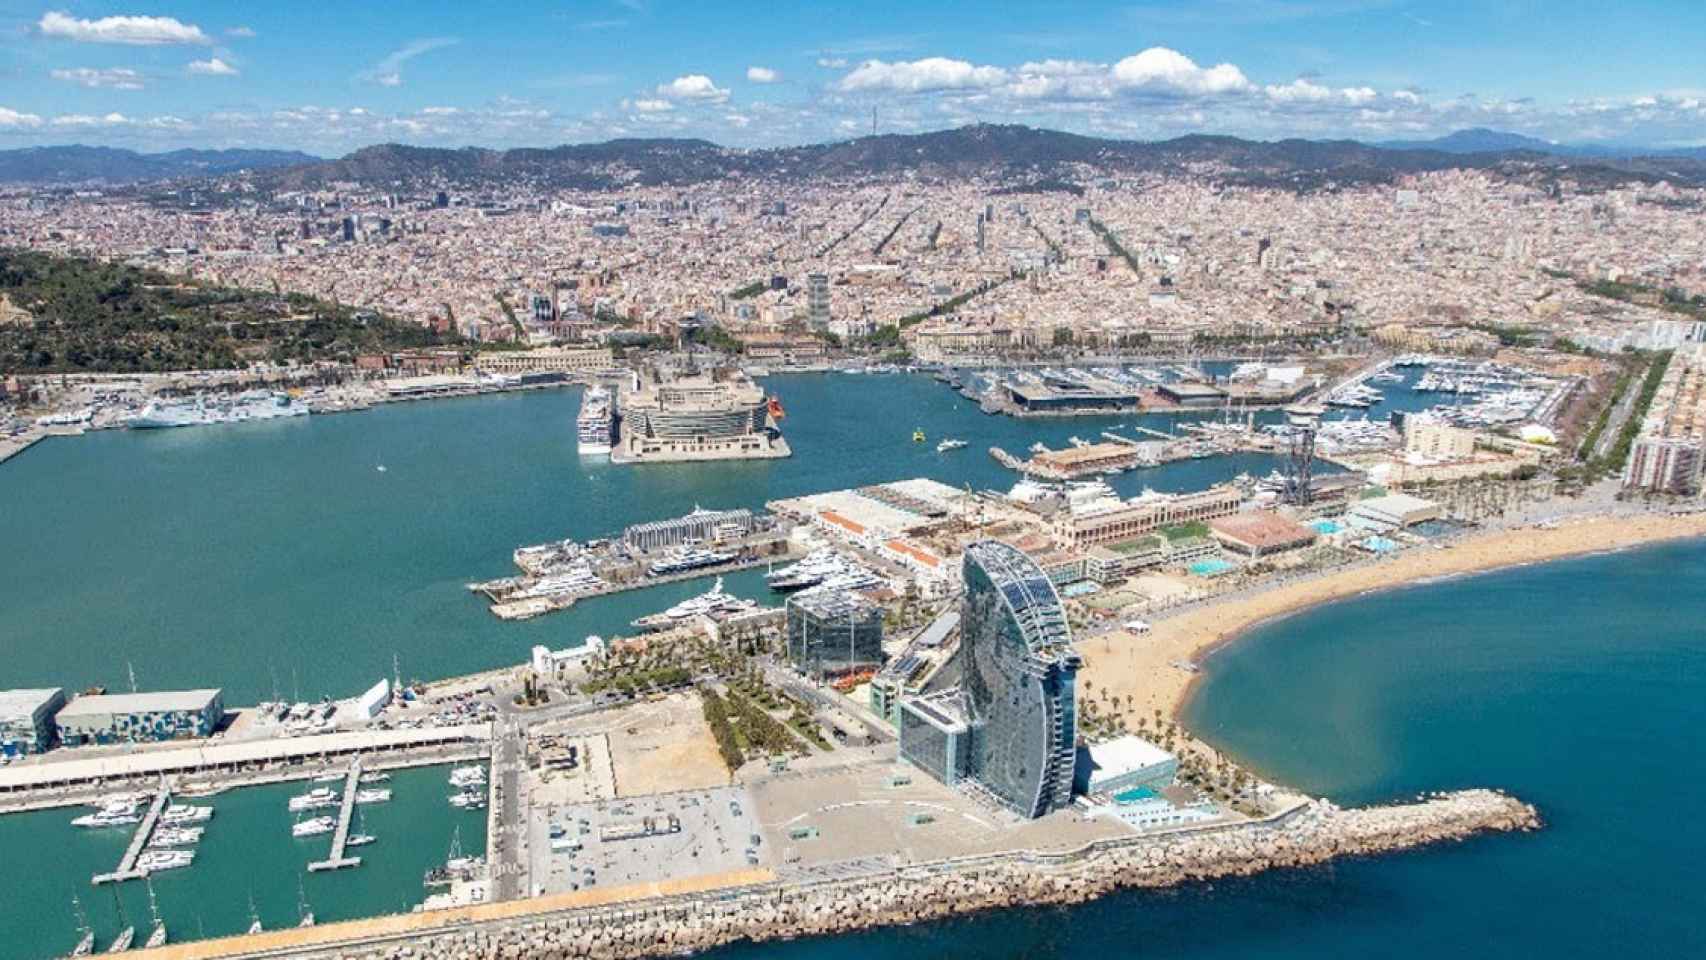 Imagen aérea del Puerto de Barcelona, donde se celebrará la Copa América